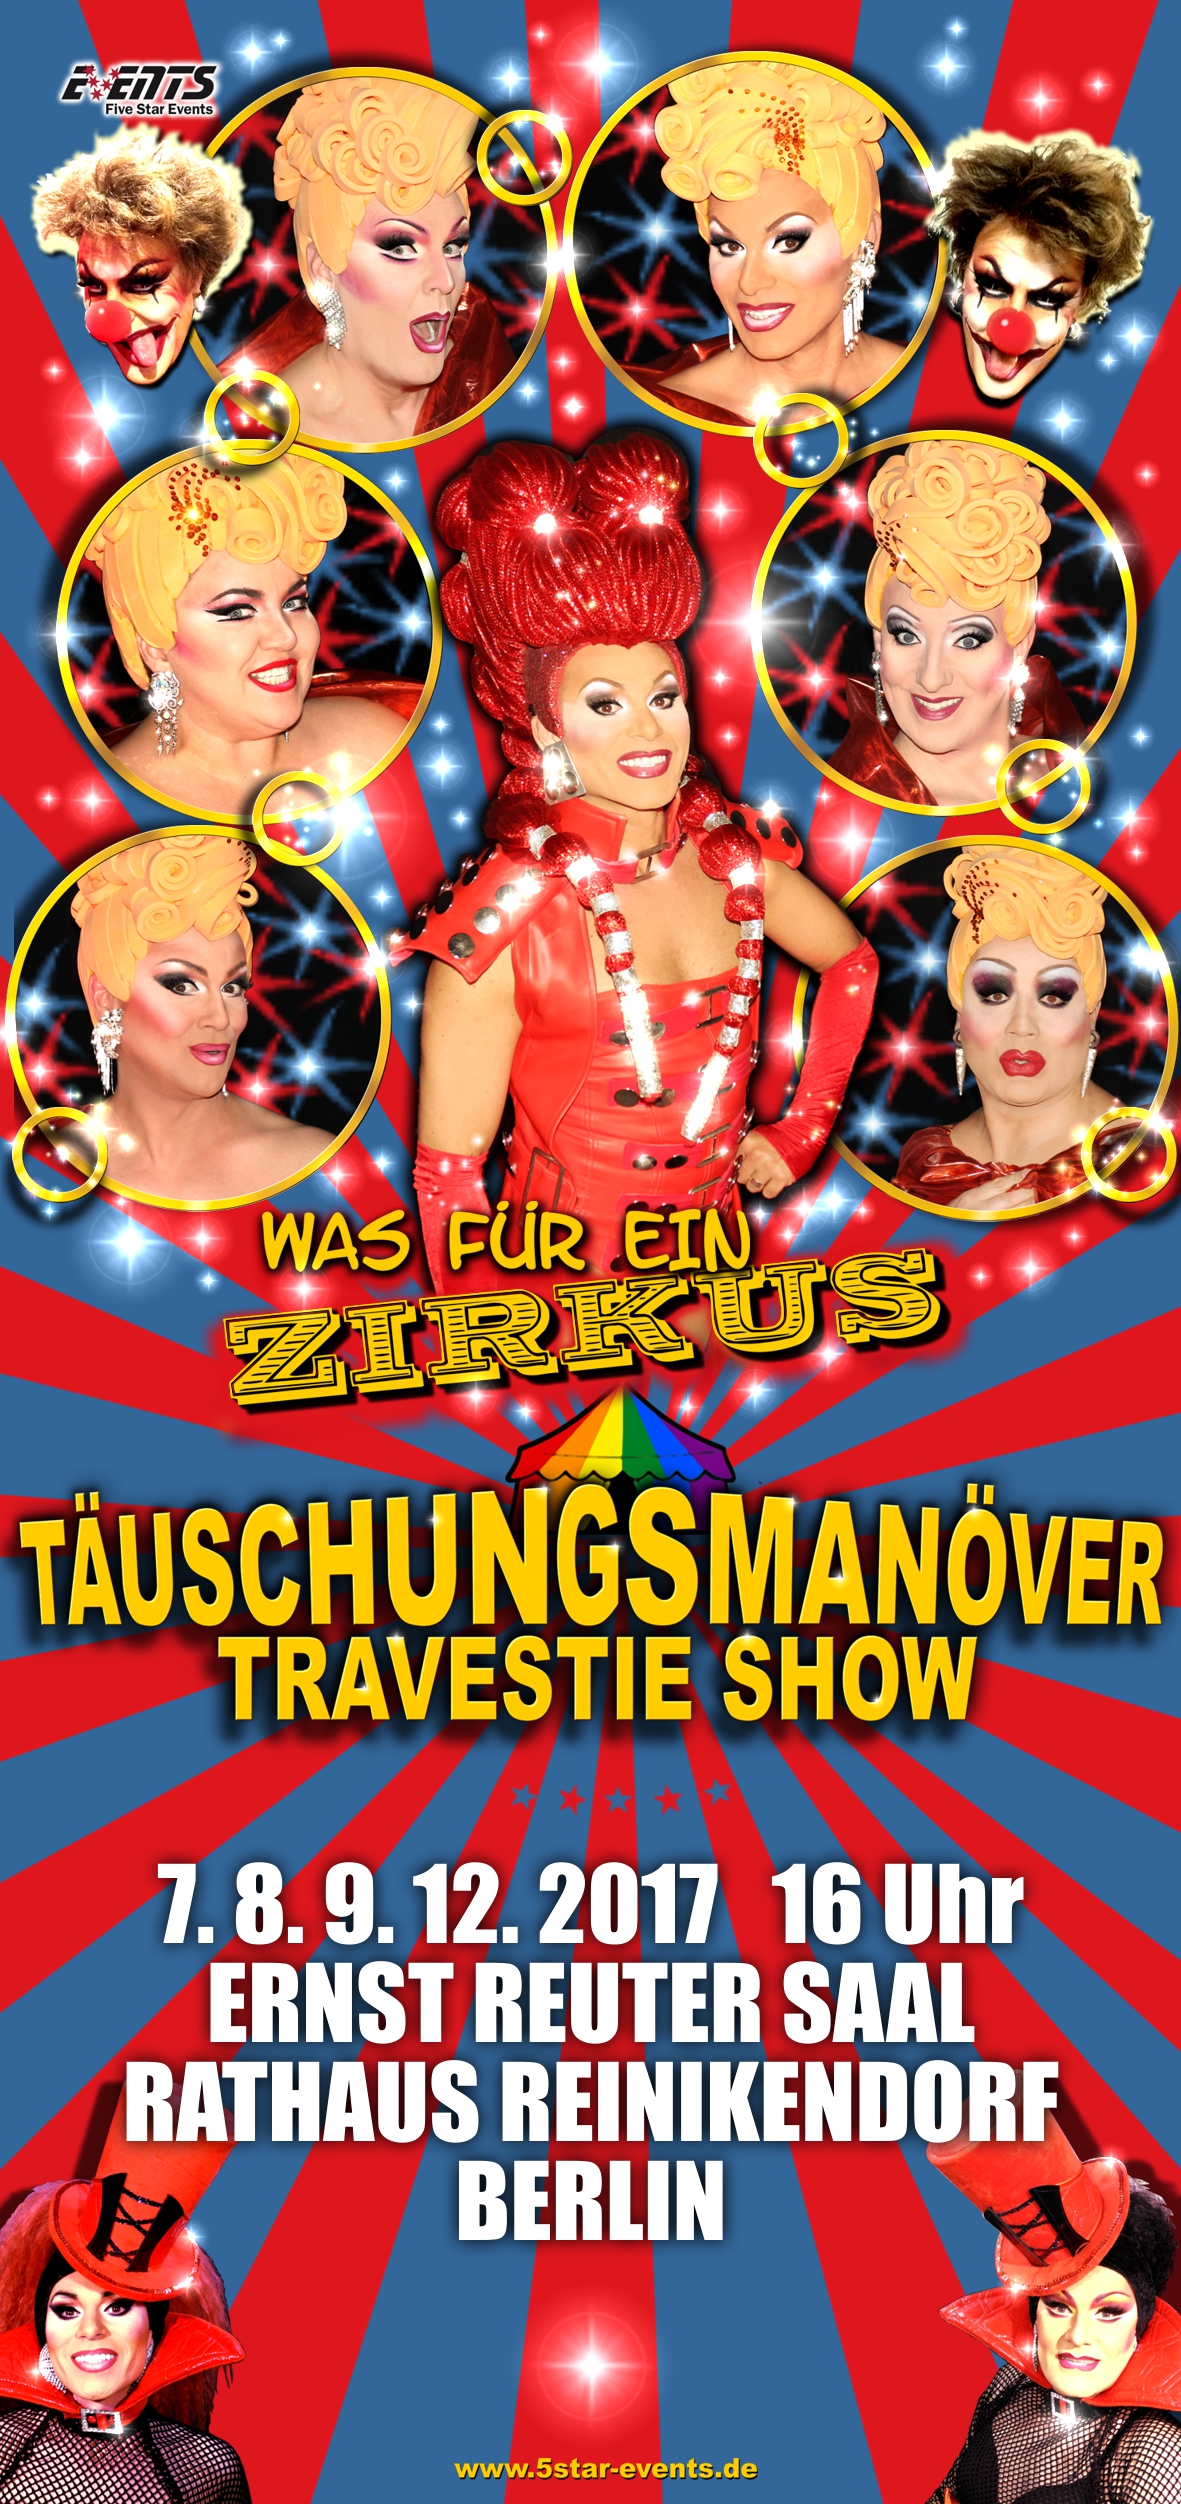 Täuschungsmanöver Travestie-Show, Was für ein Zirkus! in Berlin